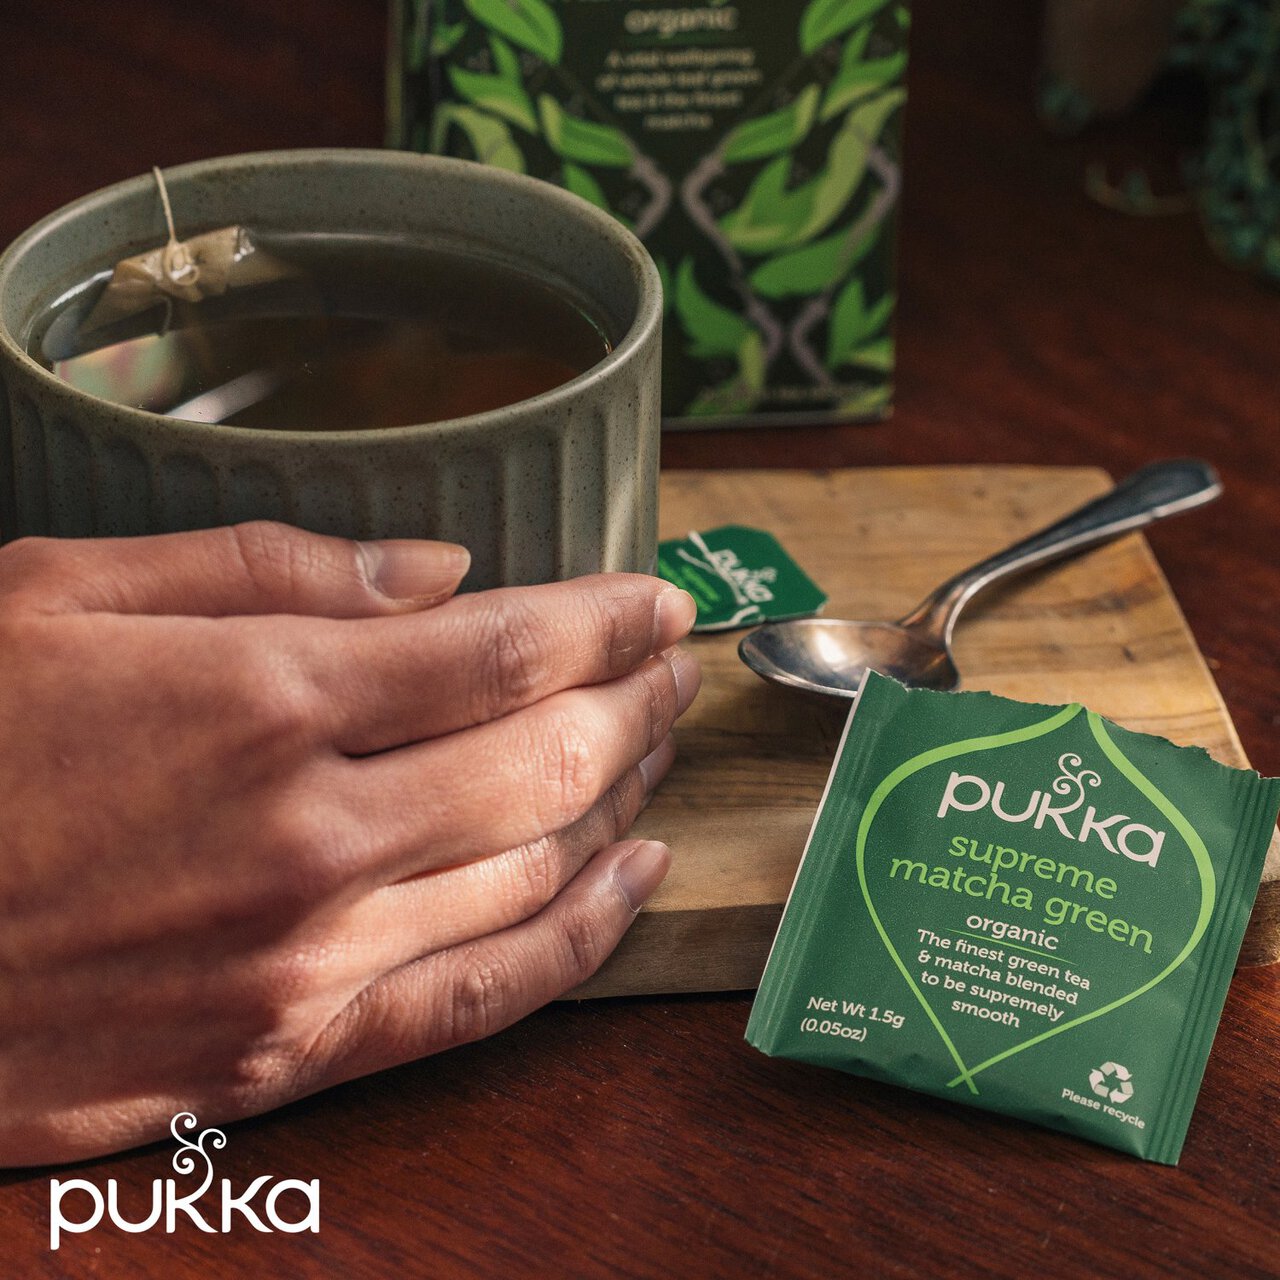 Pukka Tea Herbs Supreme Green Matcha Tea Bags 20 per pack